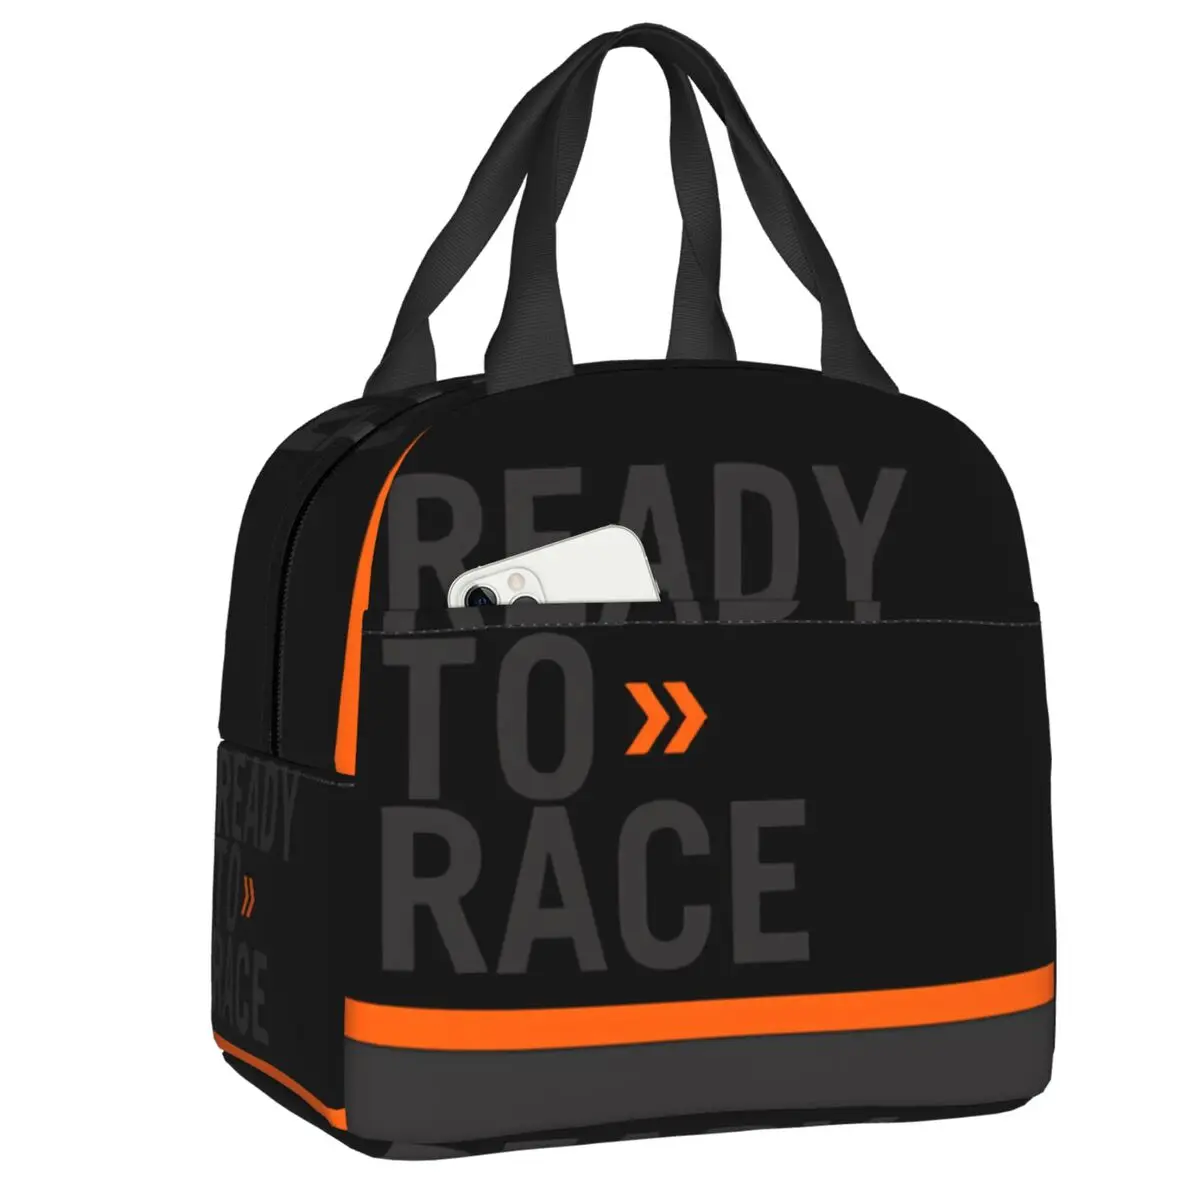 

Изолированная сумка-тоут с логотипом Ready To Race, портативный термоохладитель для гоночных занятий спортом, езды на мотоцикле, коробка для бенто, для работы, школы и путешествий